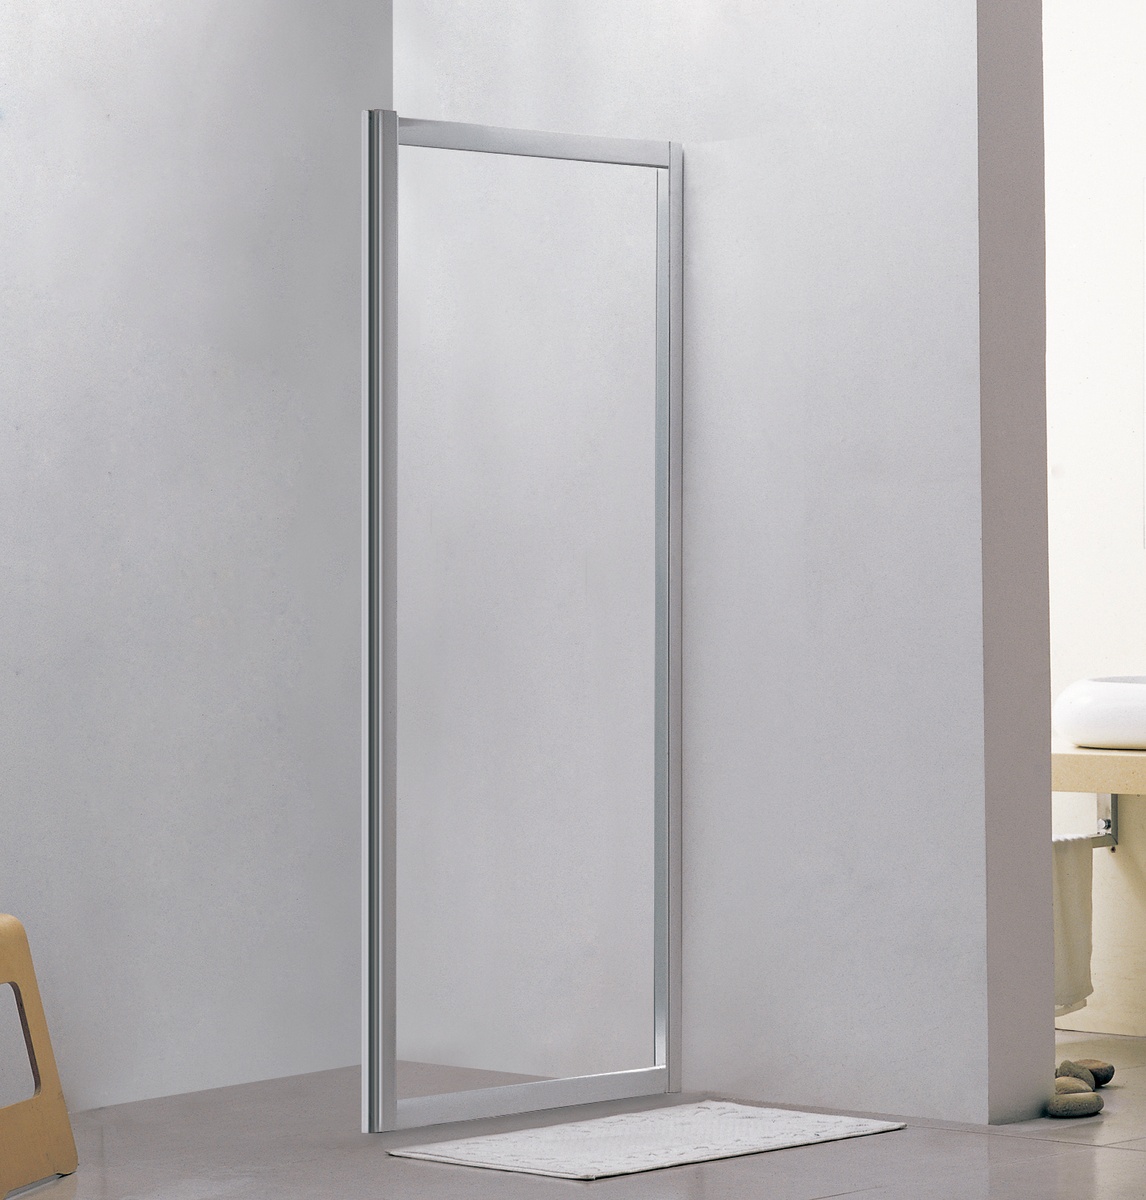 Ограждение стеклянное в душевую 80см x 195см EGER стекло прозрачное 5мм 599-150-80W(h)